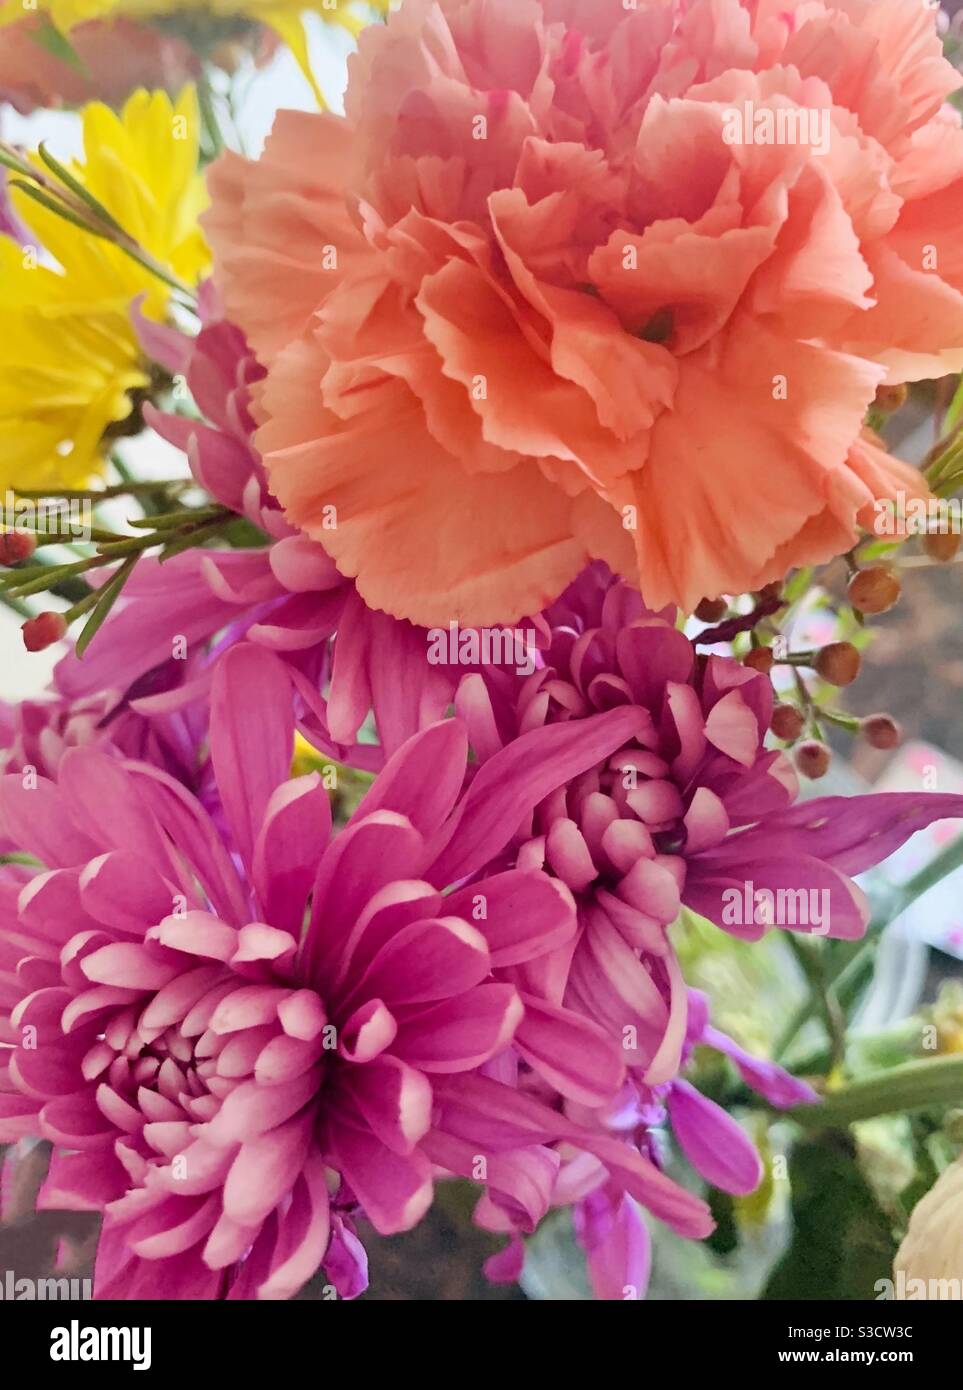 Belles œillets - fleurs roses et orange - livraison florale - fleurs d'anniversaire Banque D'Images